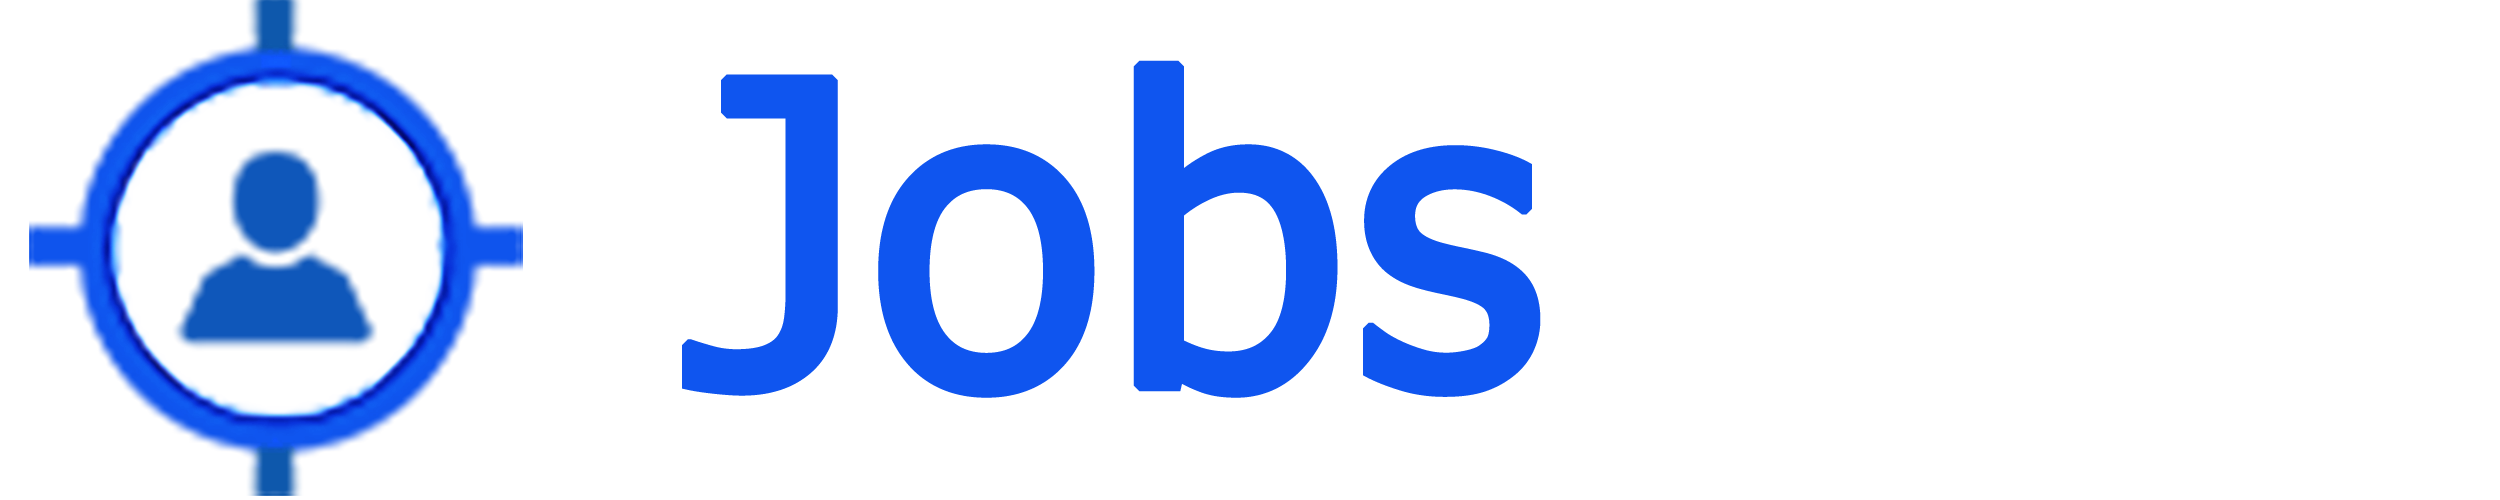 I Jobs Near - iJobsNear.com